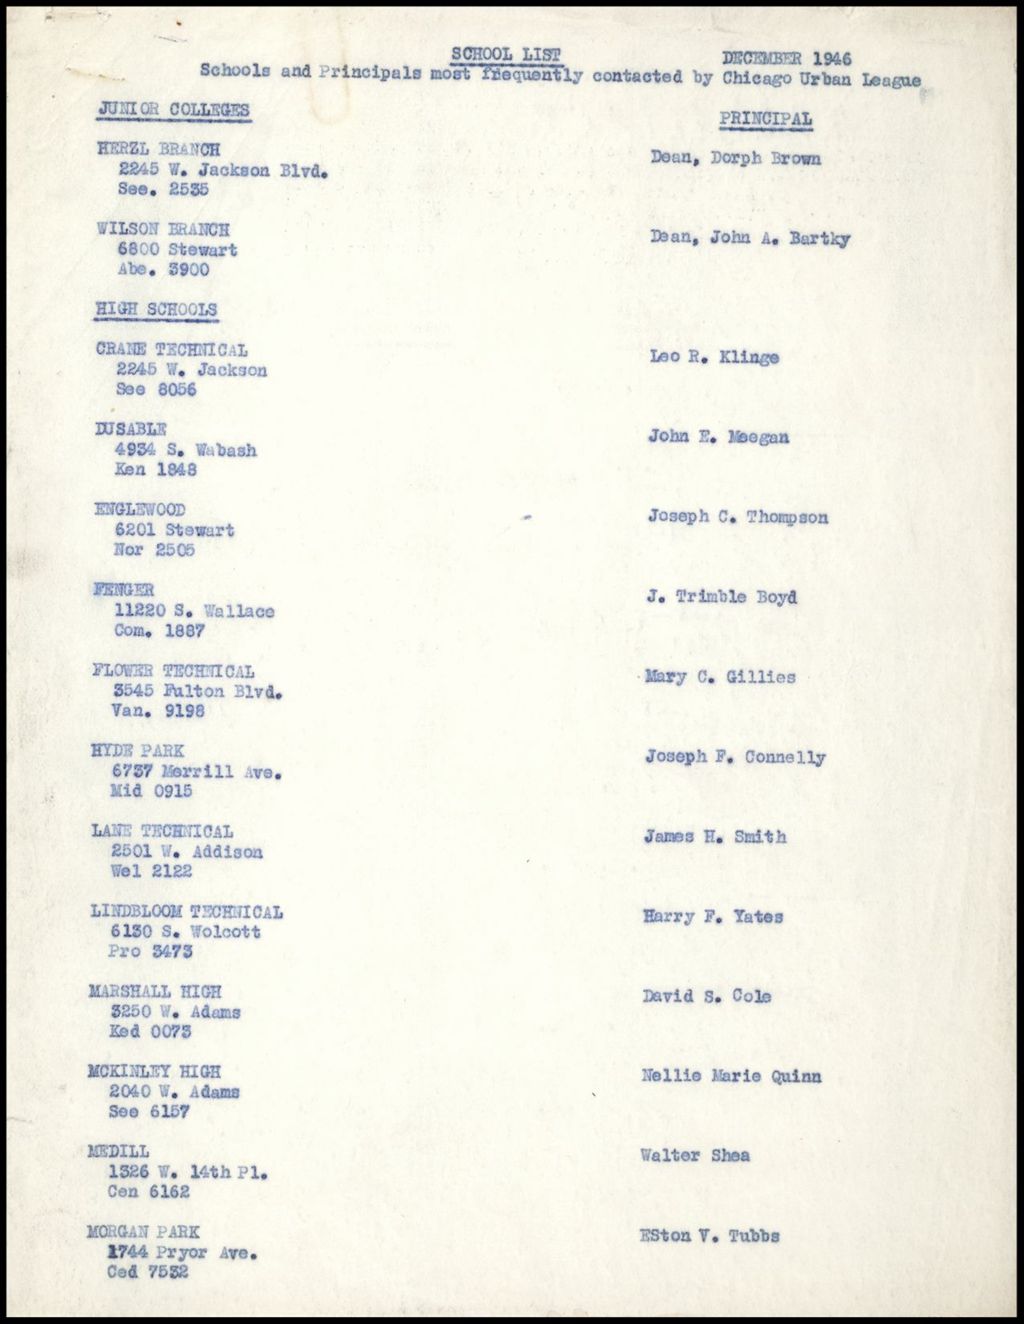 Schools - Lists of Schools and Principals, 1946-1954 (Folder II-2275)